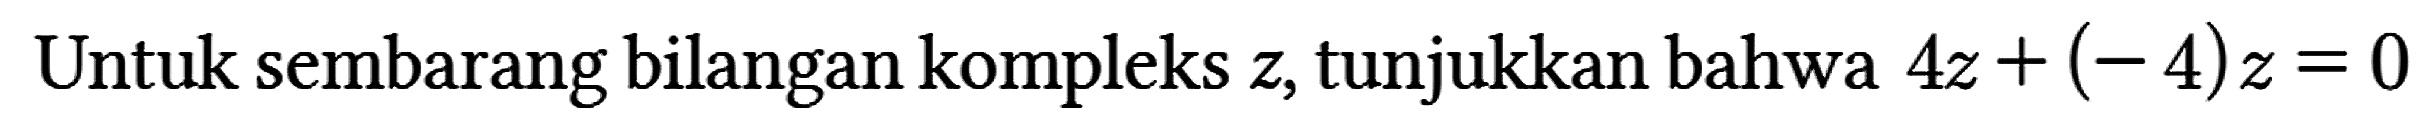 Untuk sembarang bilangan kompleks z, tunjukkan bahwa 4z + (-4)z=0